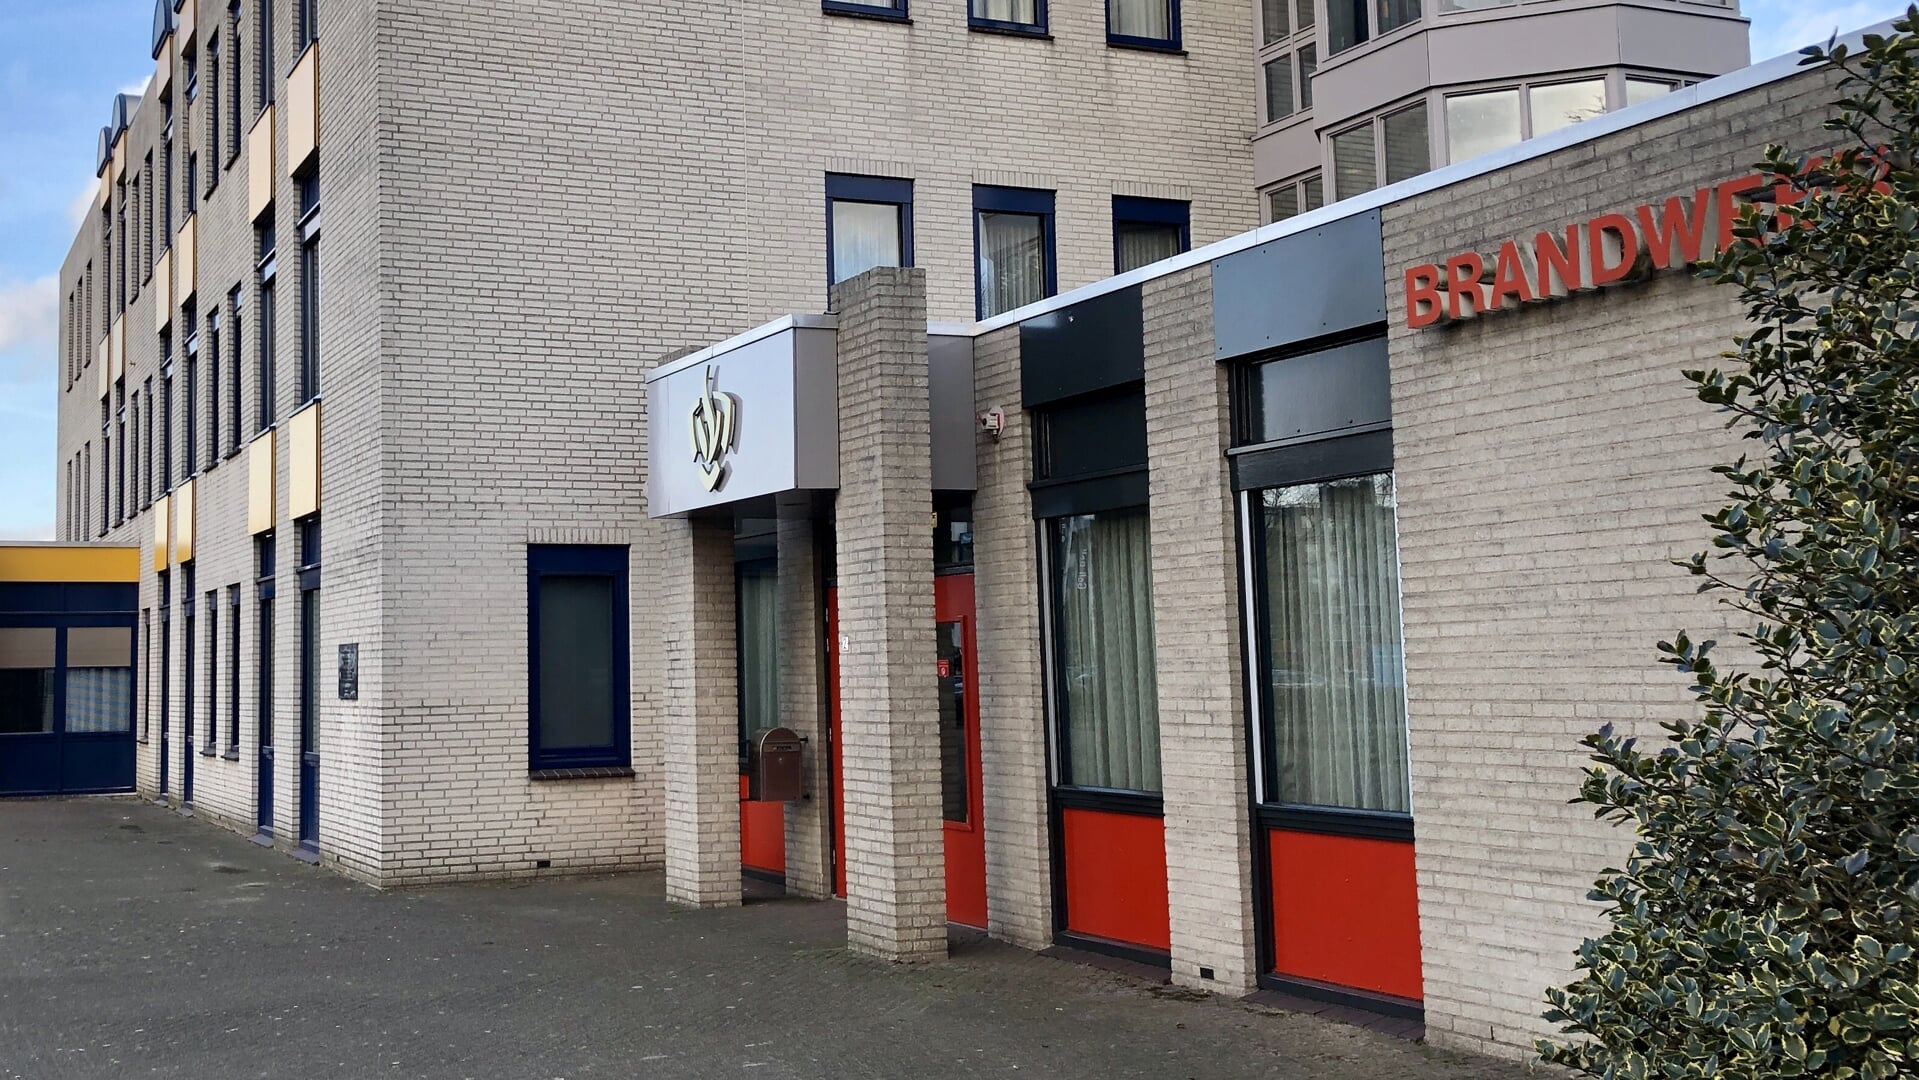 De brandweer is gevestigd aan het Stadhuisplein in Veghel.